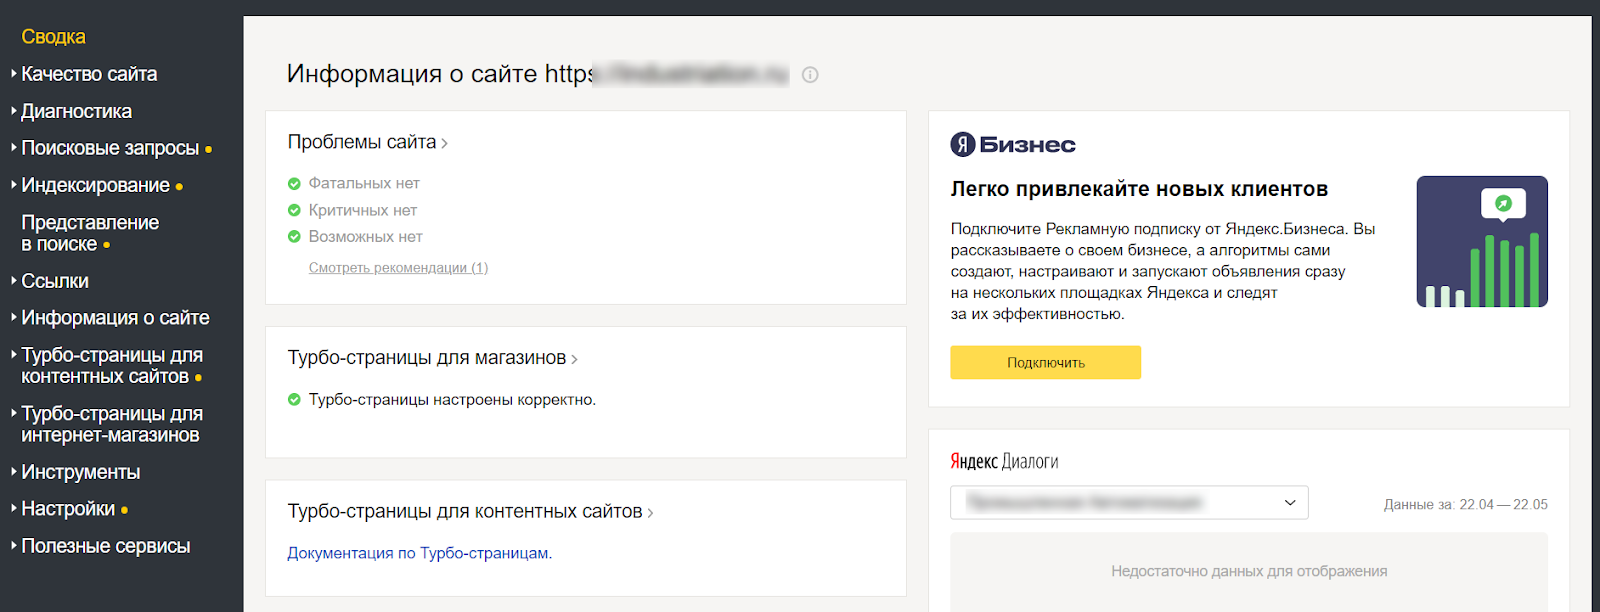 Руководство по Яндекс Вебмастер: как настроить и пользоваться сервисом